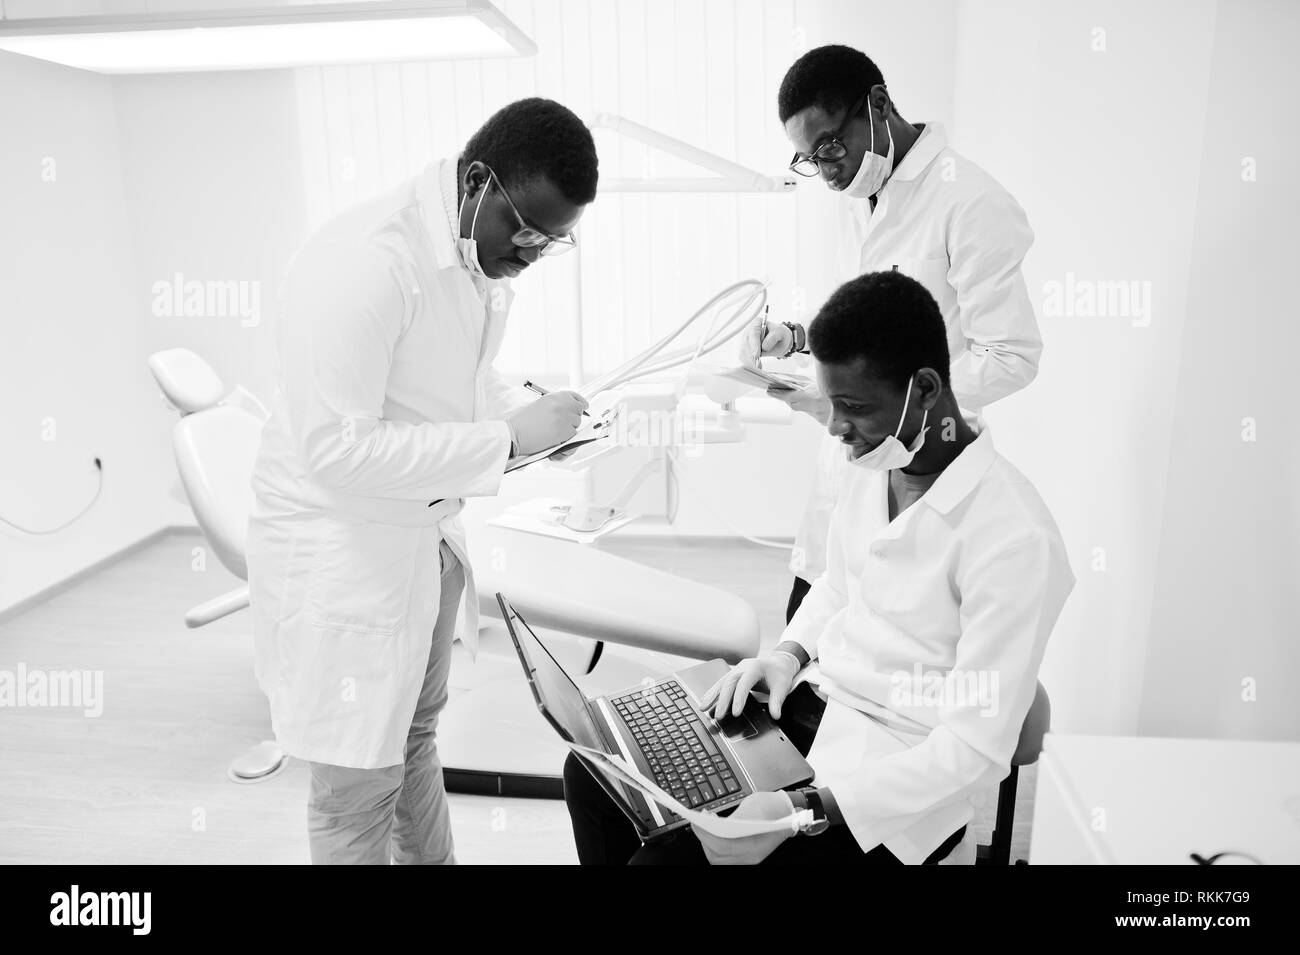 African American male trois médecins qui travaillent avec un ordinateur portable, de discuter avec des collègues dans une clinique dentaire. Banque D'Images